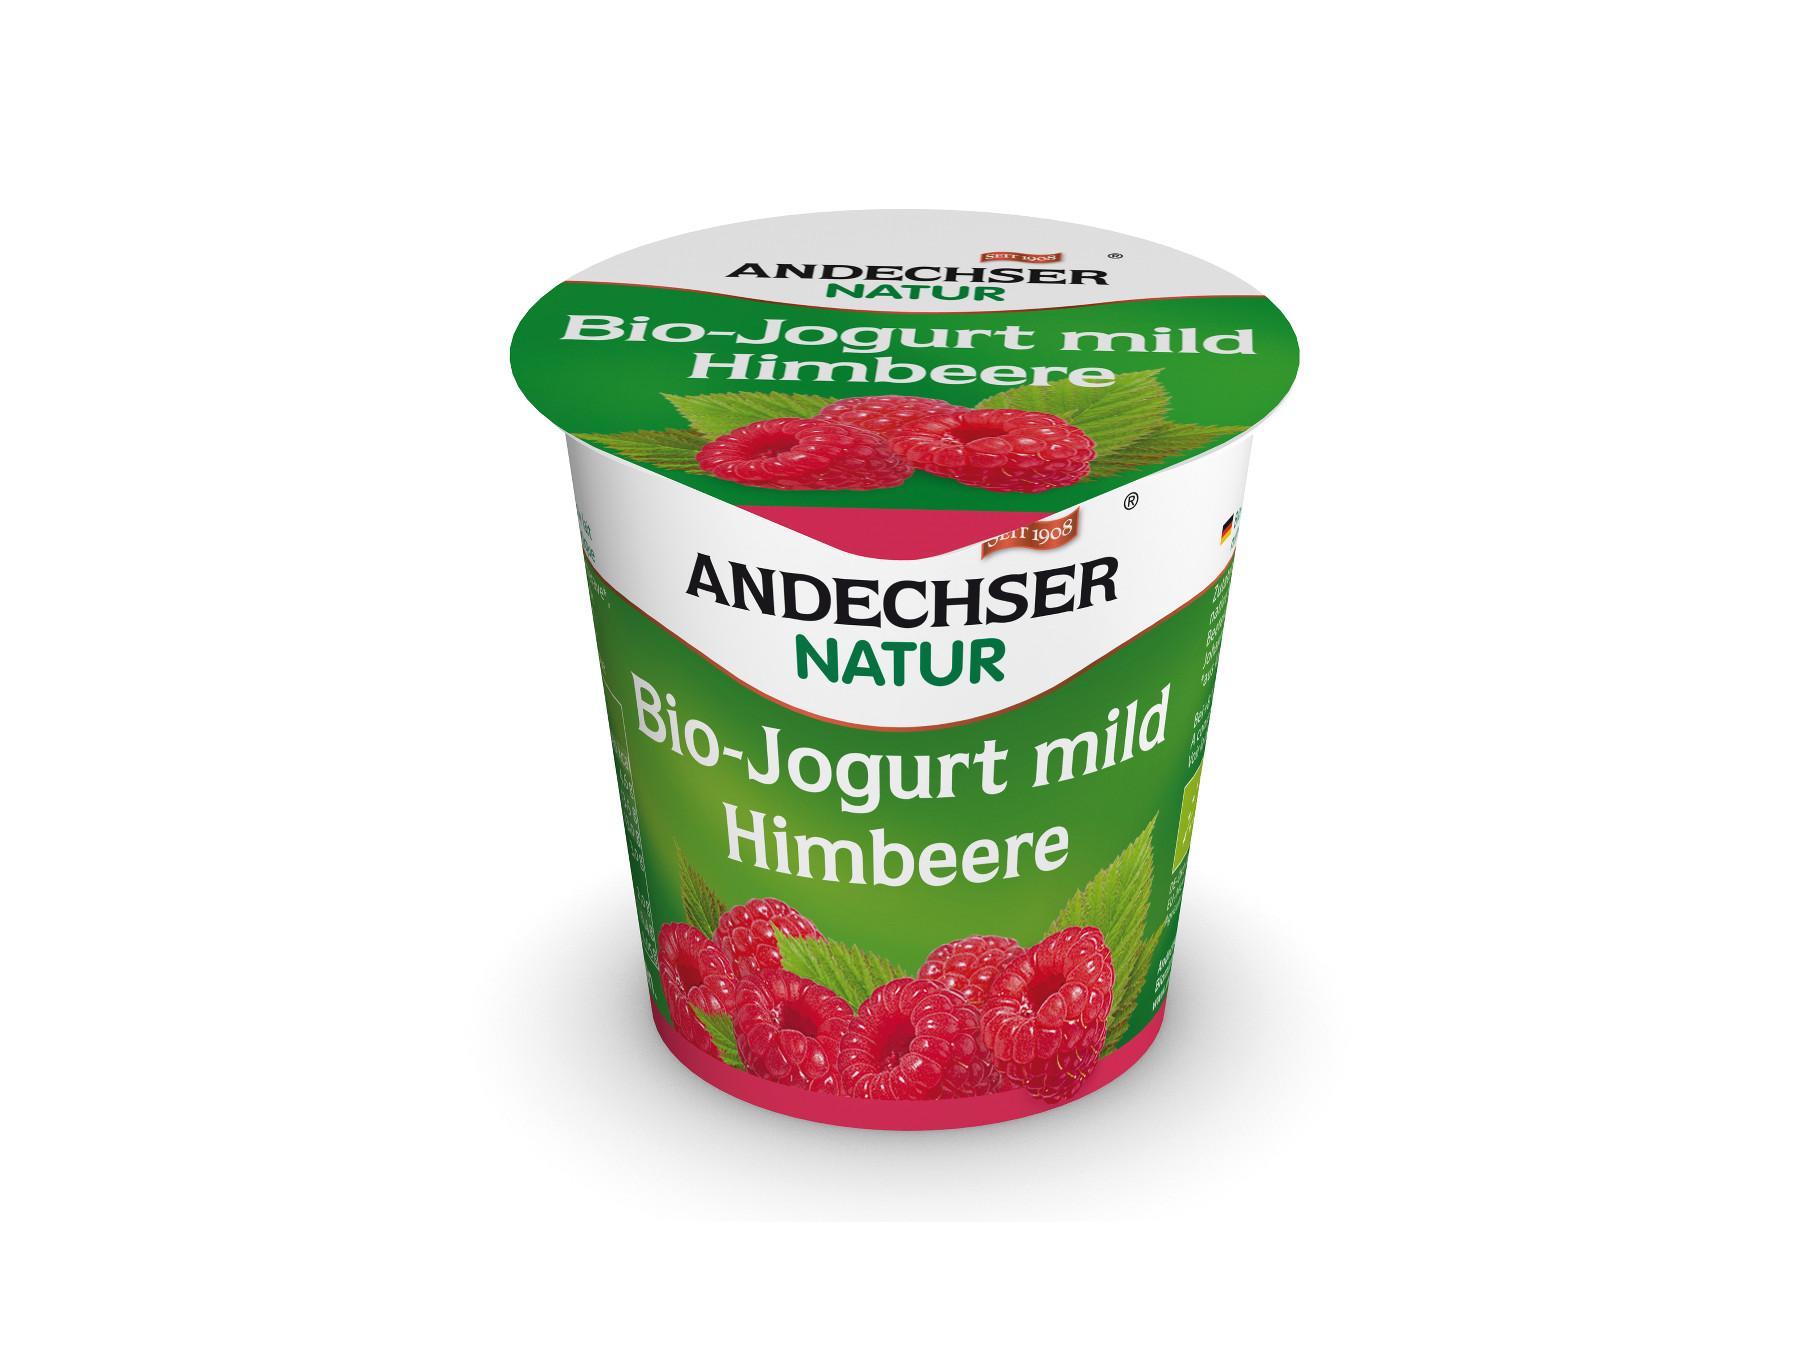 Andechser Natur Bio-Jogurt mild Himbeere 3,7%